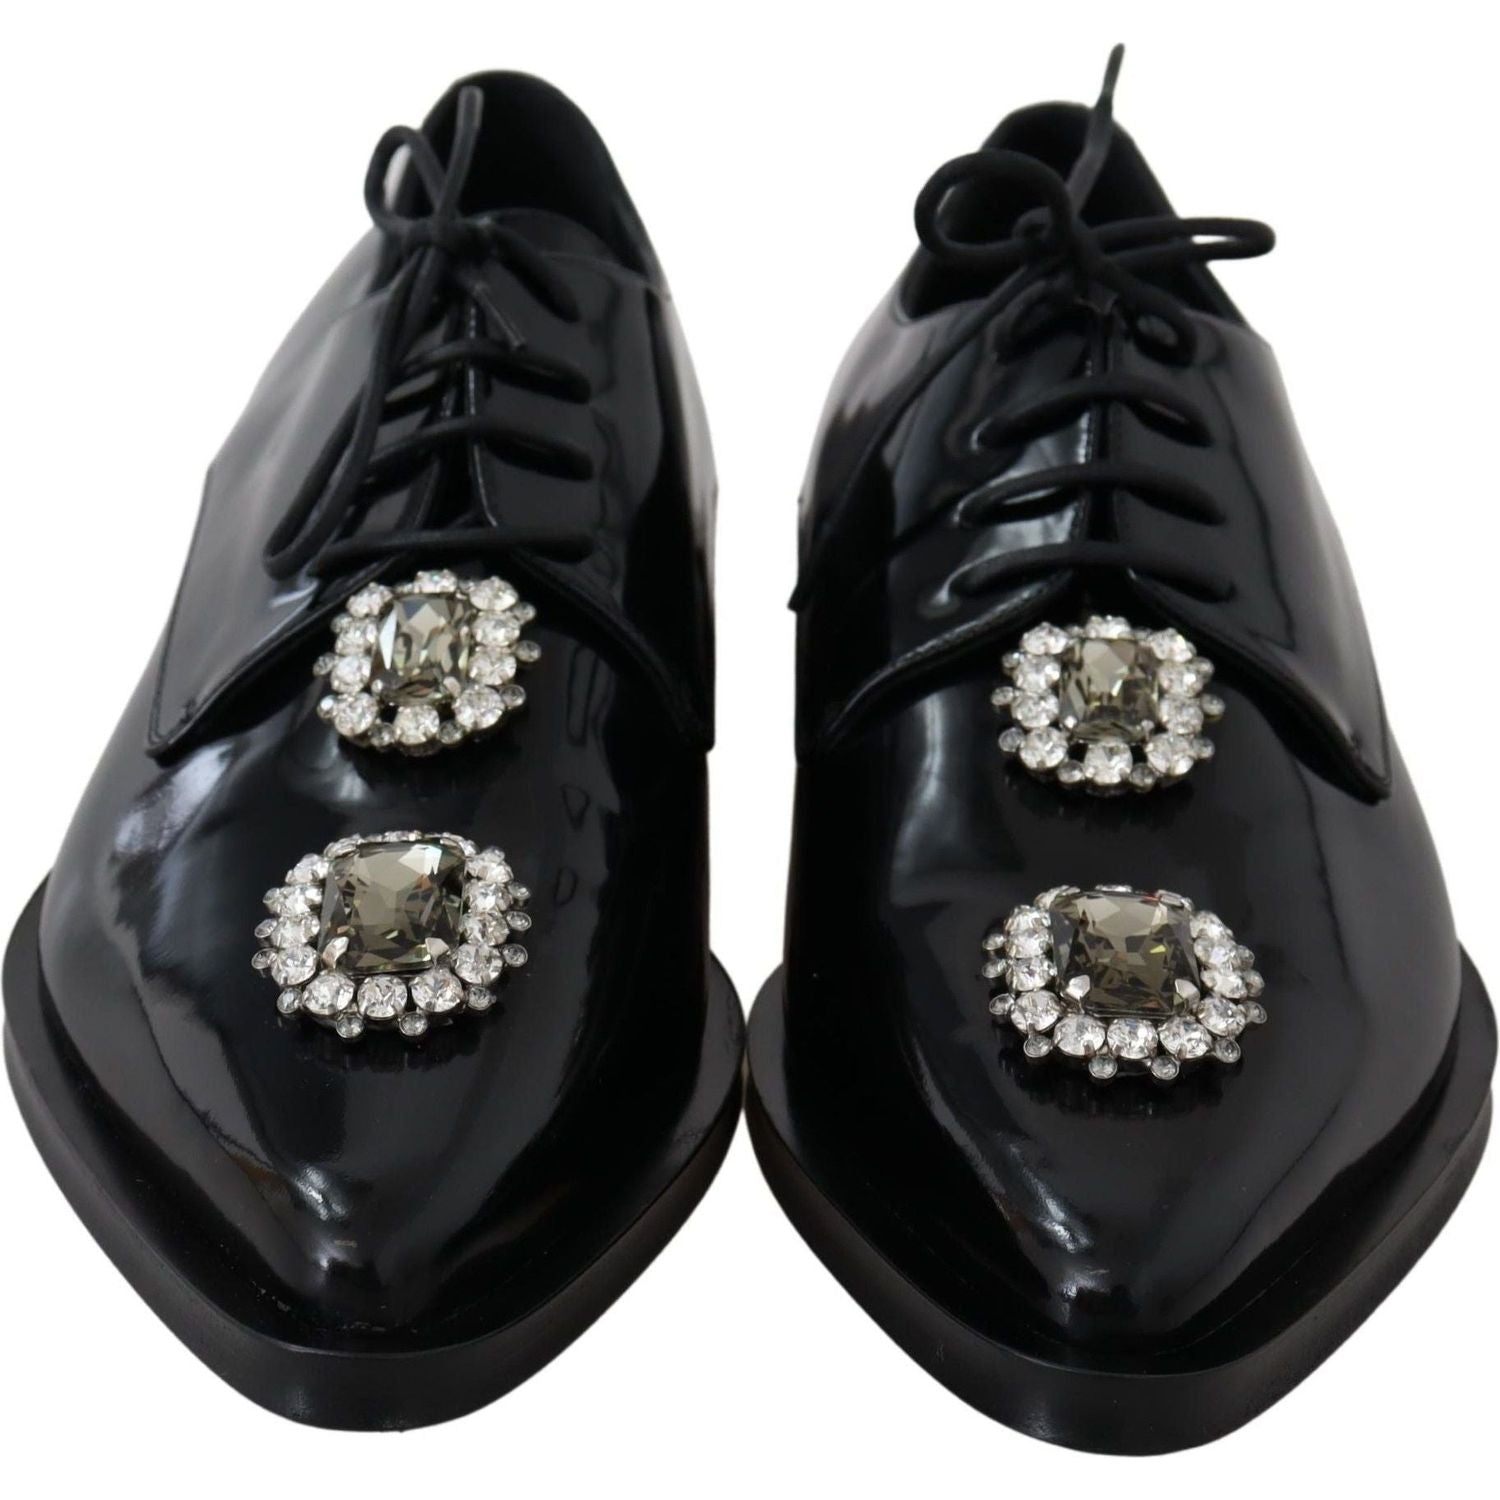 Dolce & Gabbana | Black Leather Crystal Lace Up Formal Shoes | 539.00 - McRichard Designer Brands